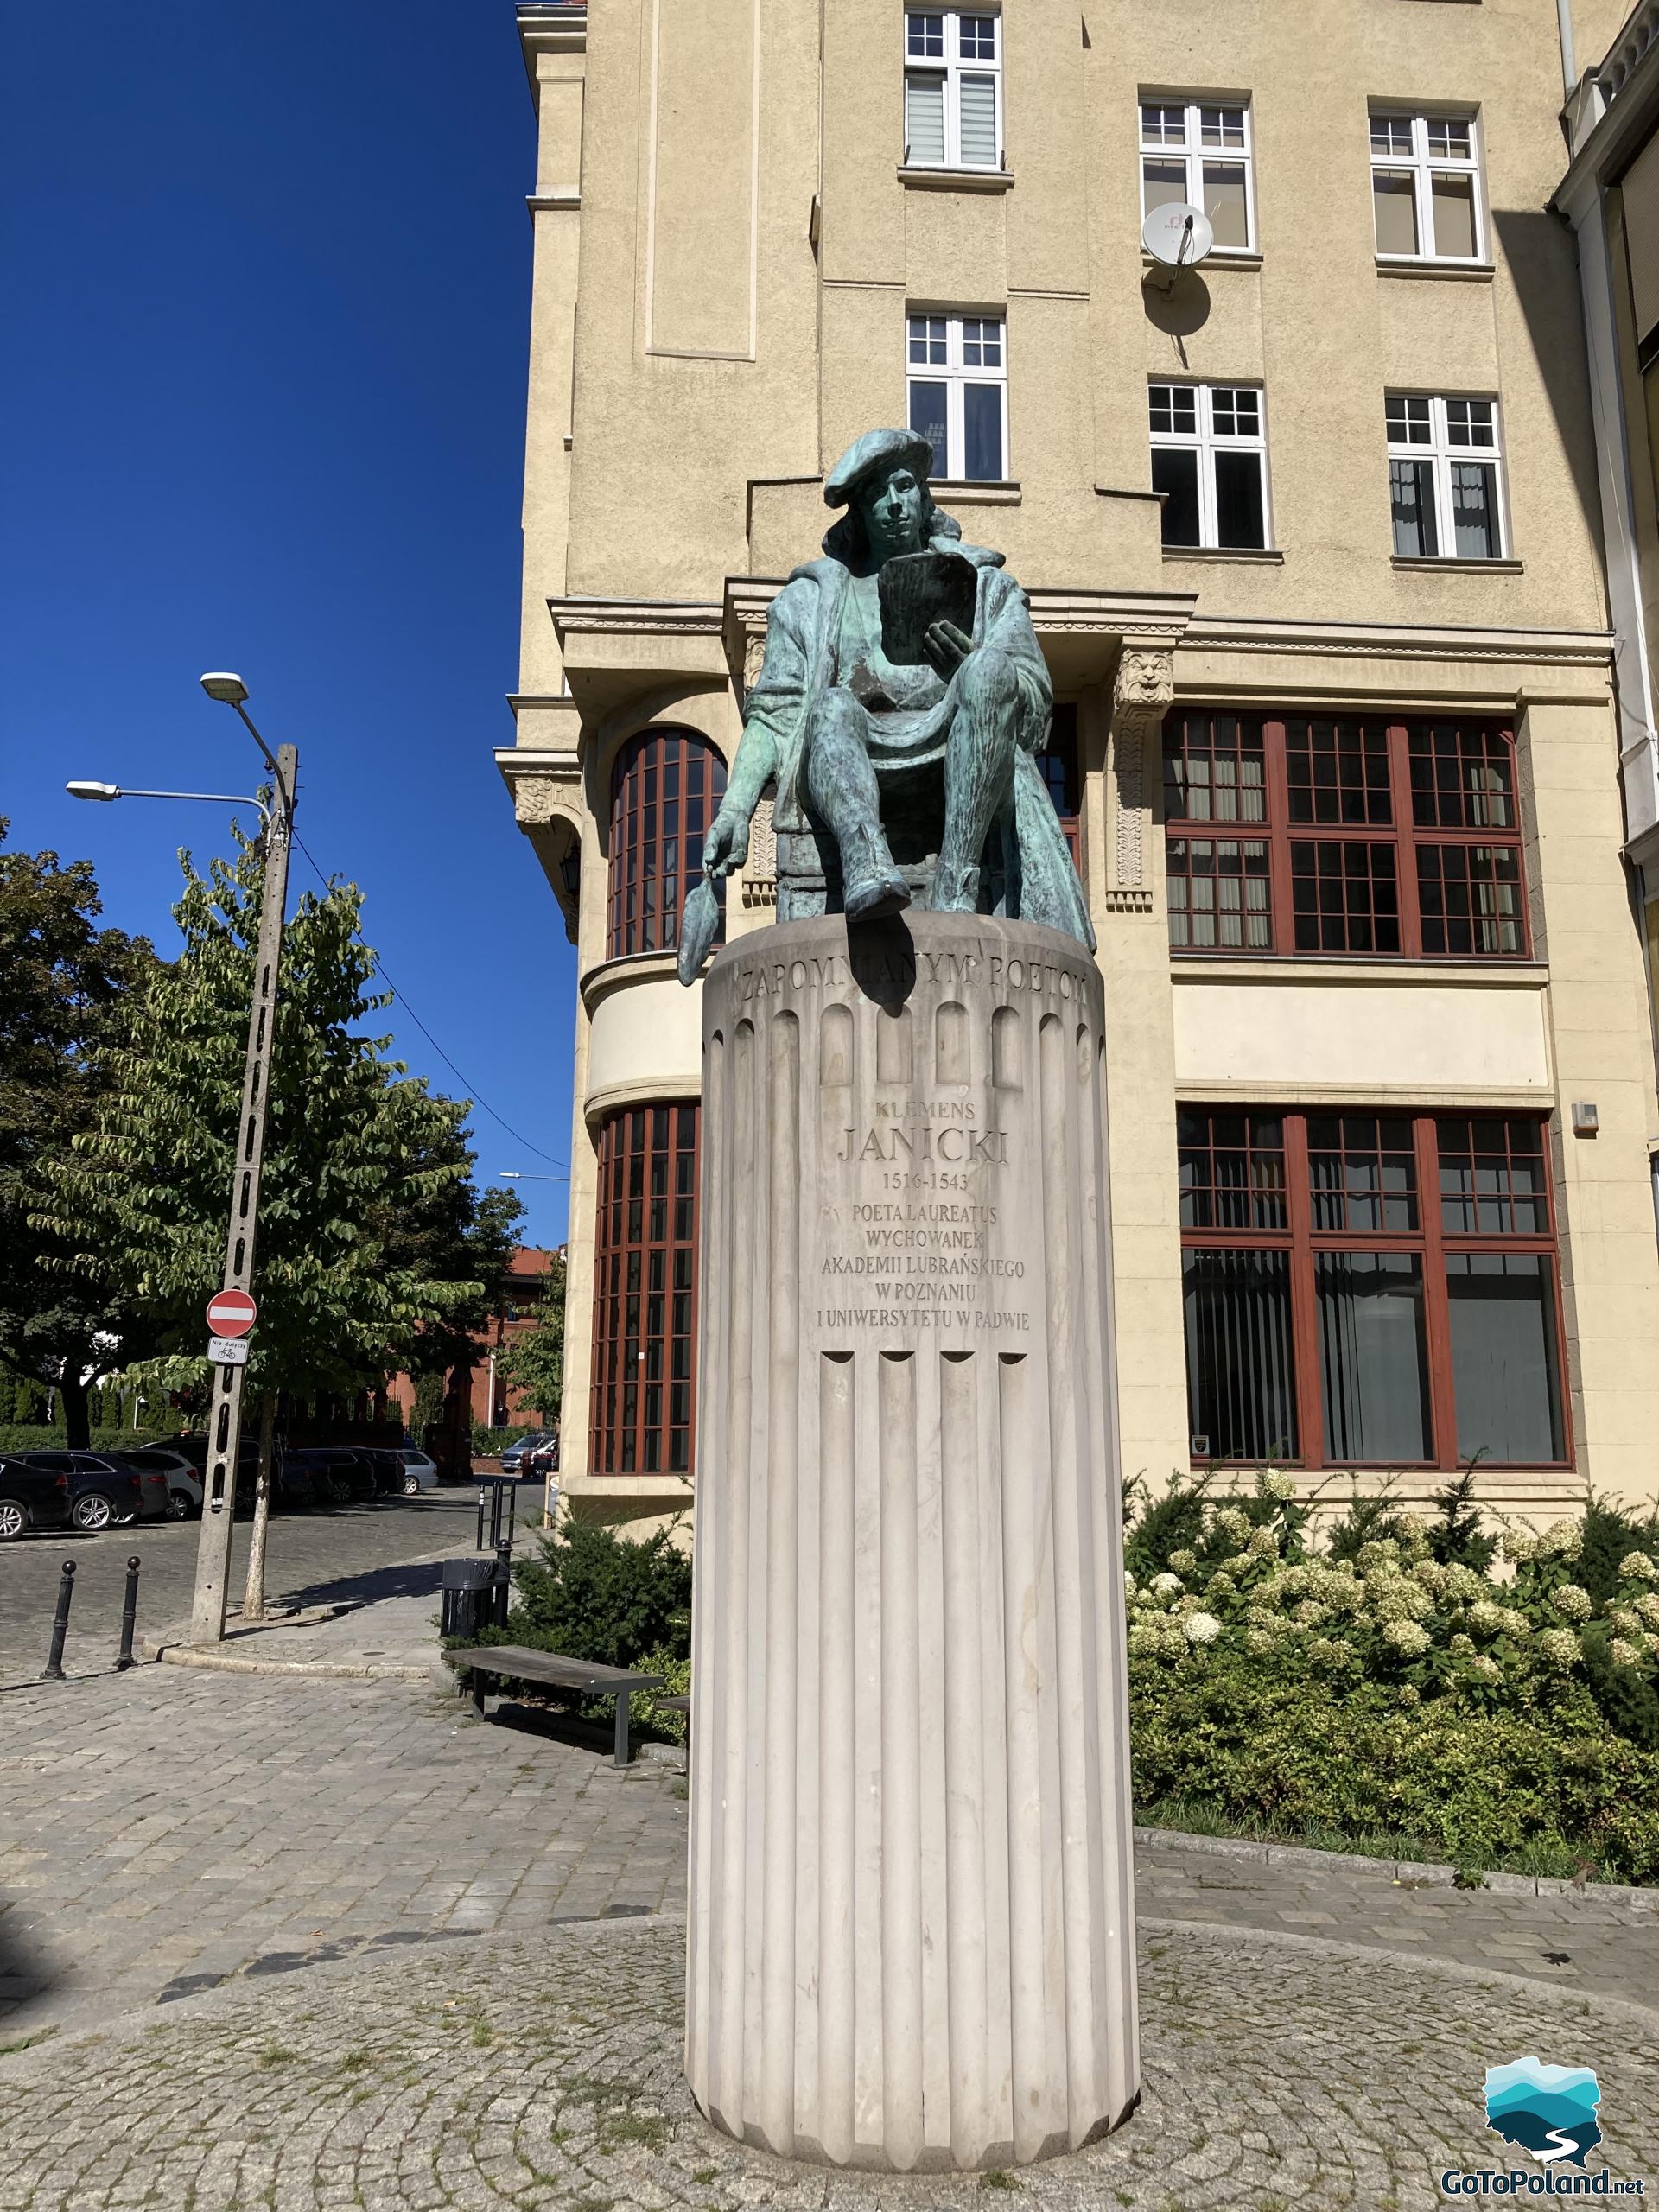 a sculpture of a man placed on a high column